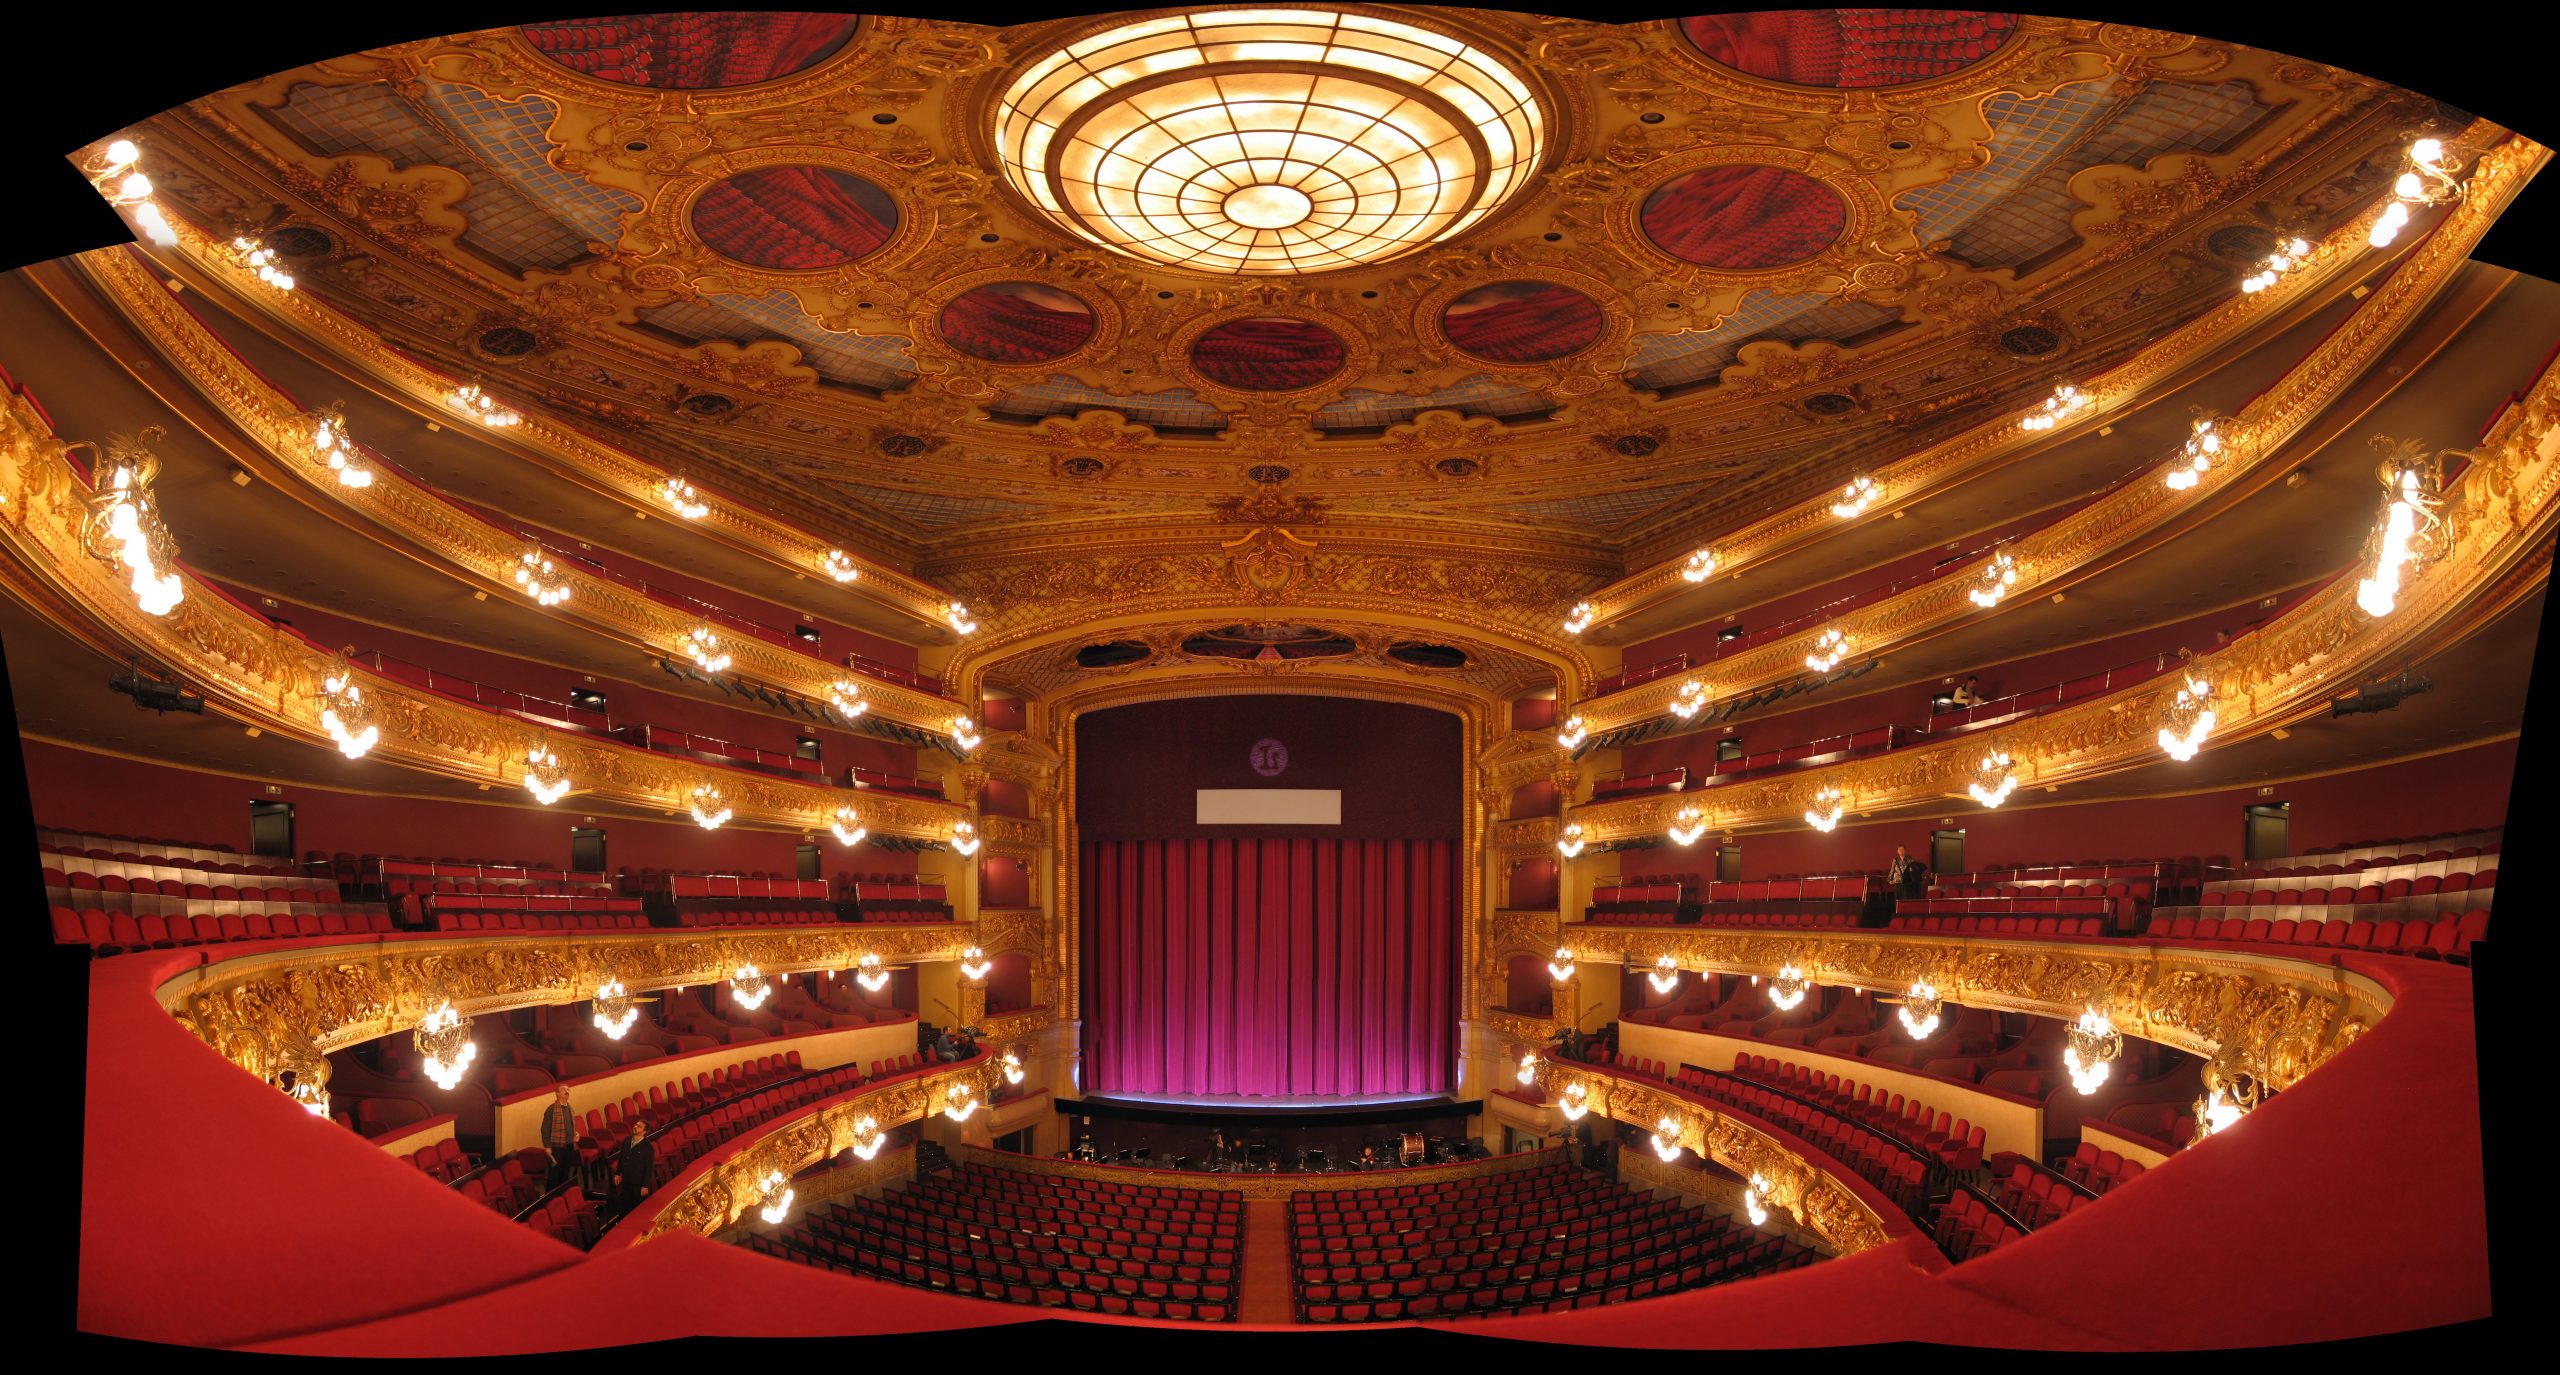 A large theatre auditorium